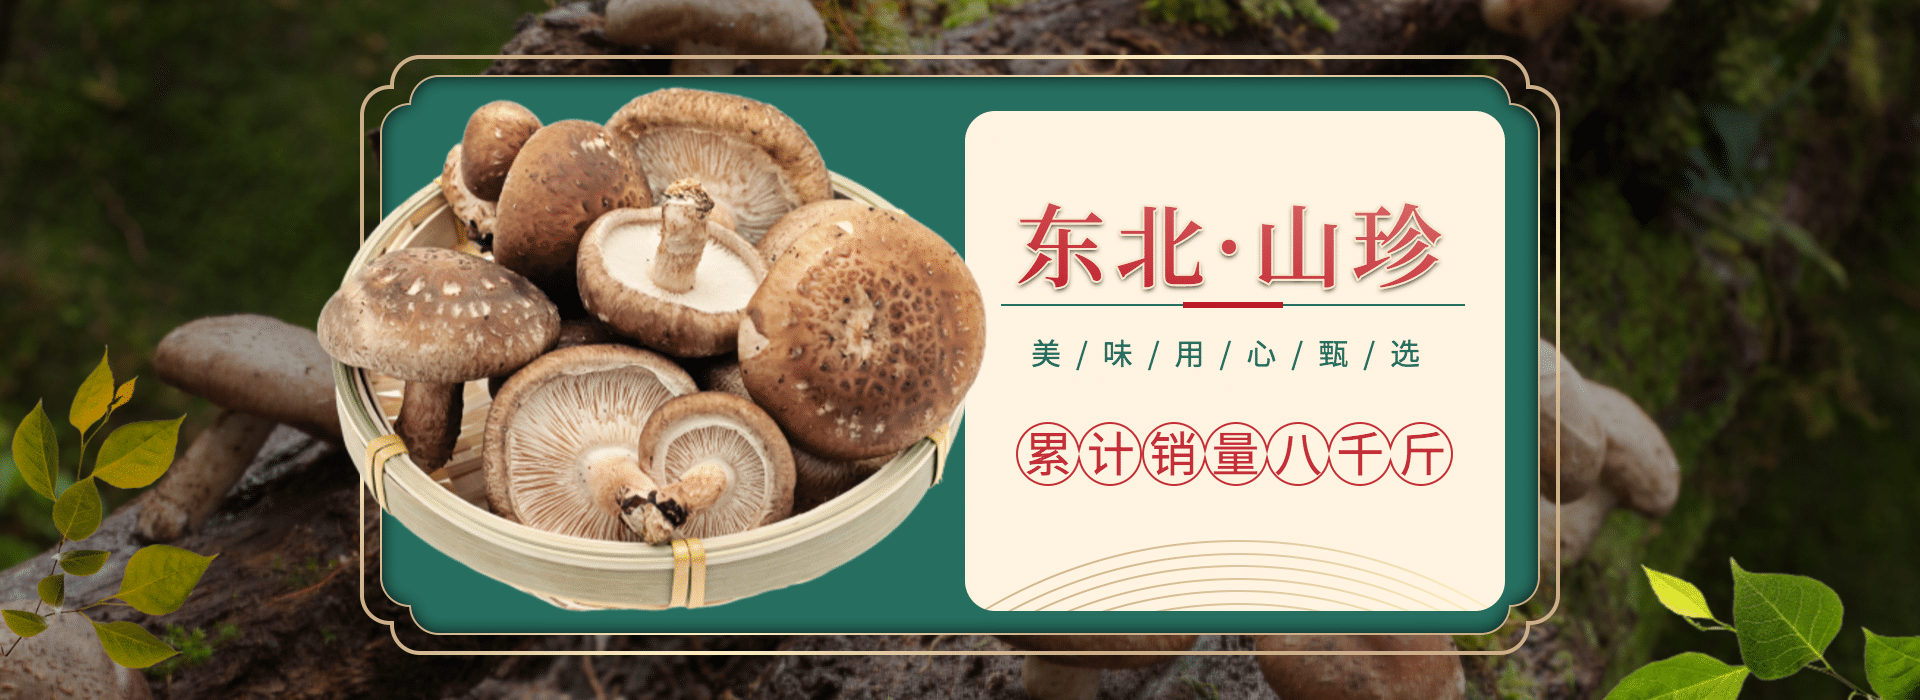 食品/菌菇介绍海报